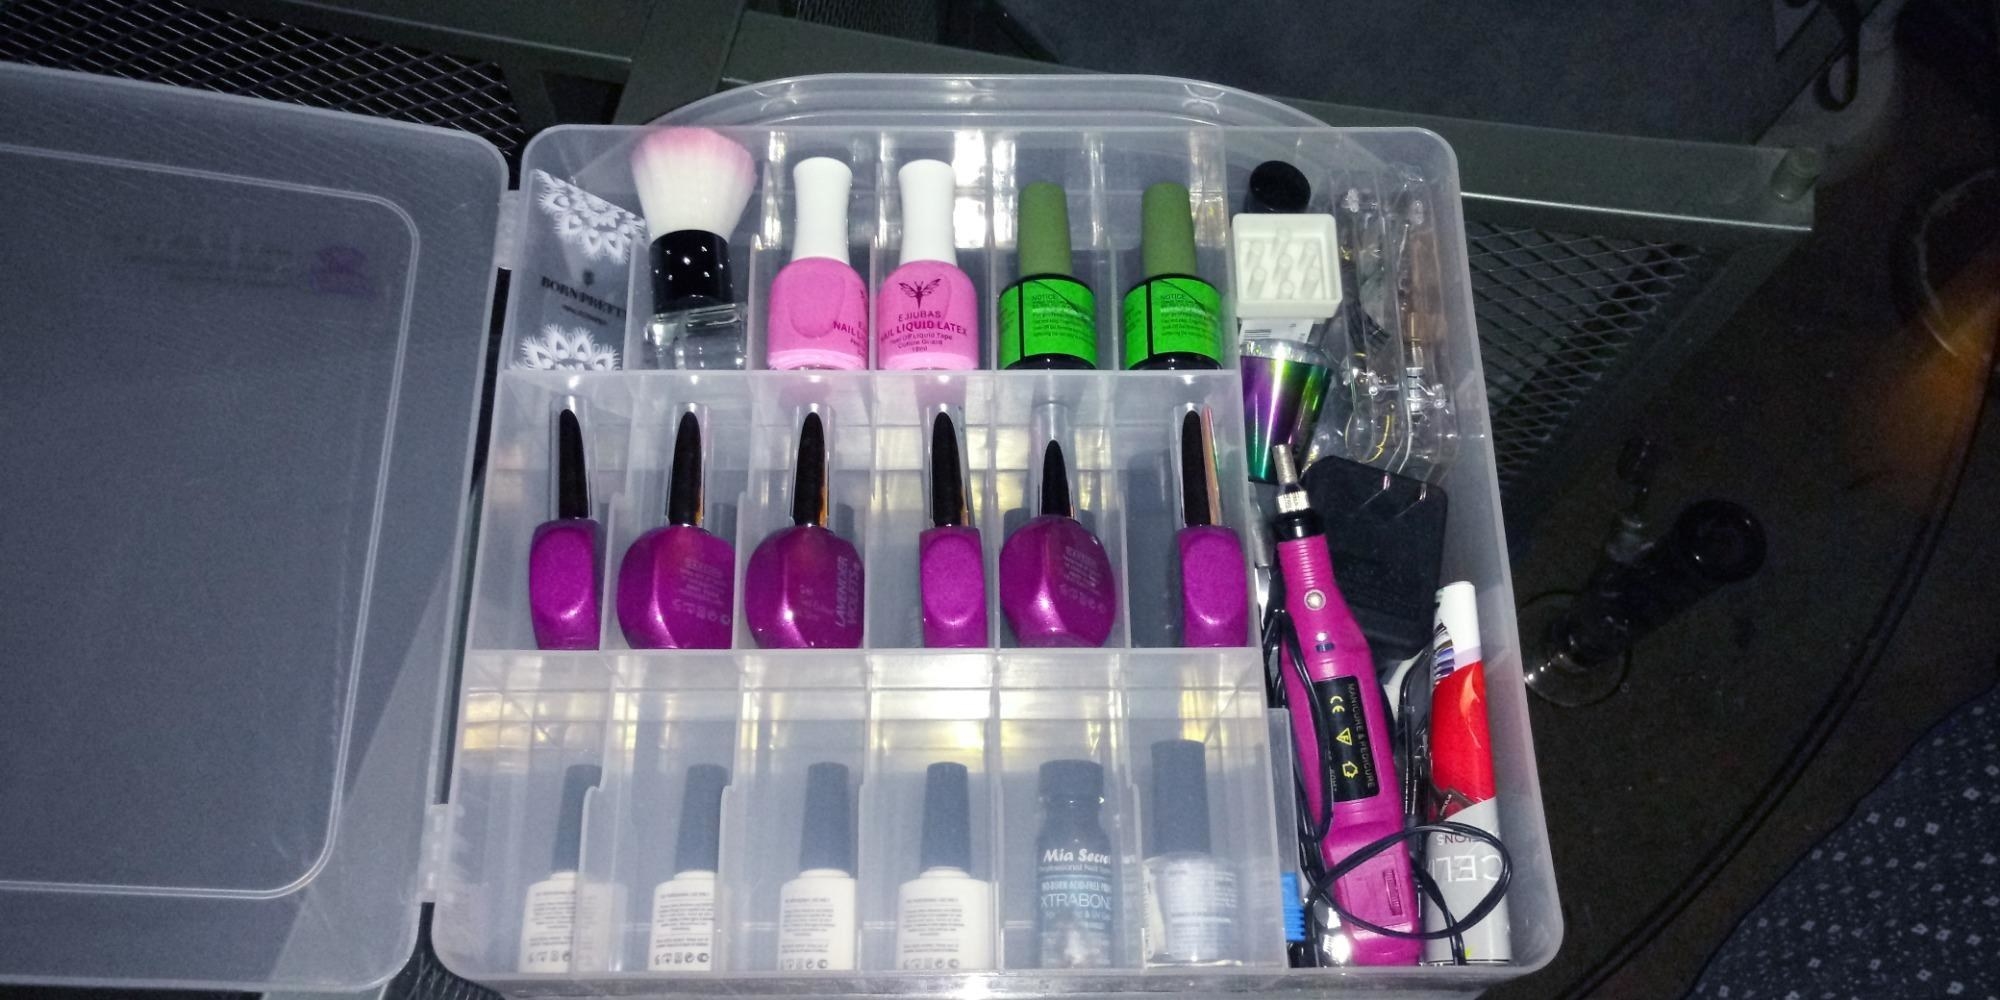 Review image of nail polish in the makartt nail polish organizer